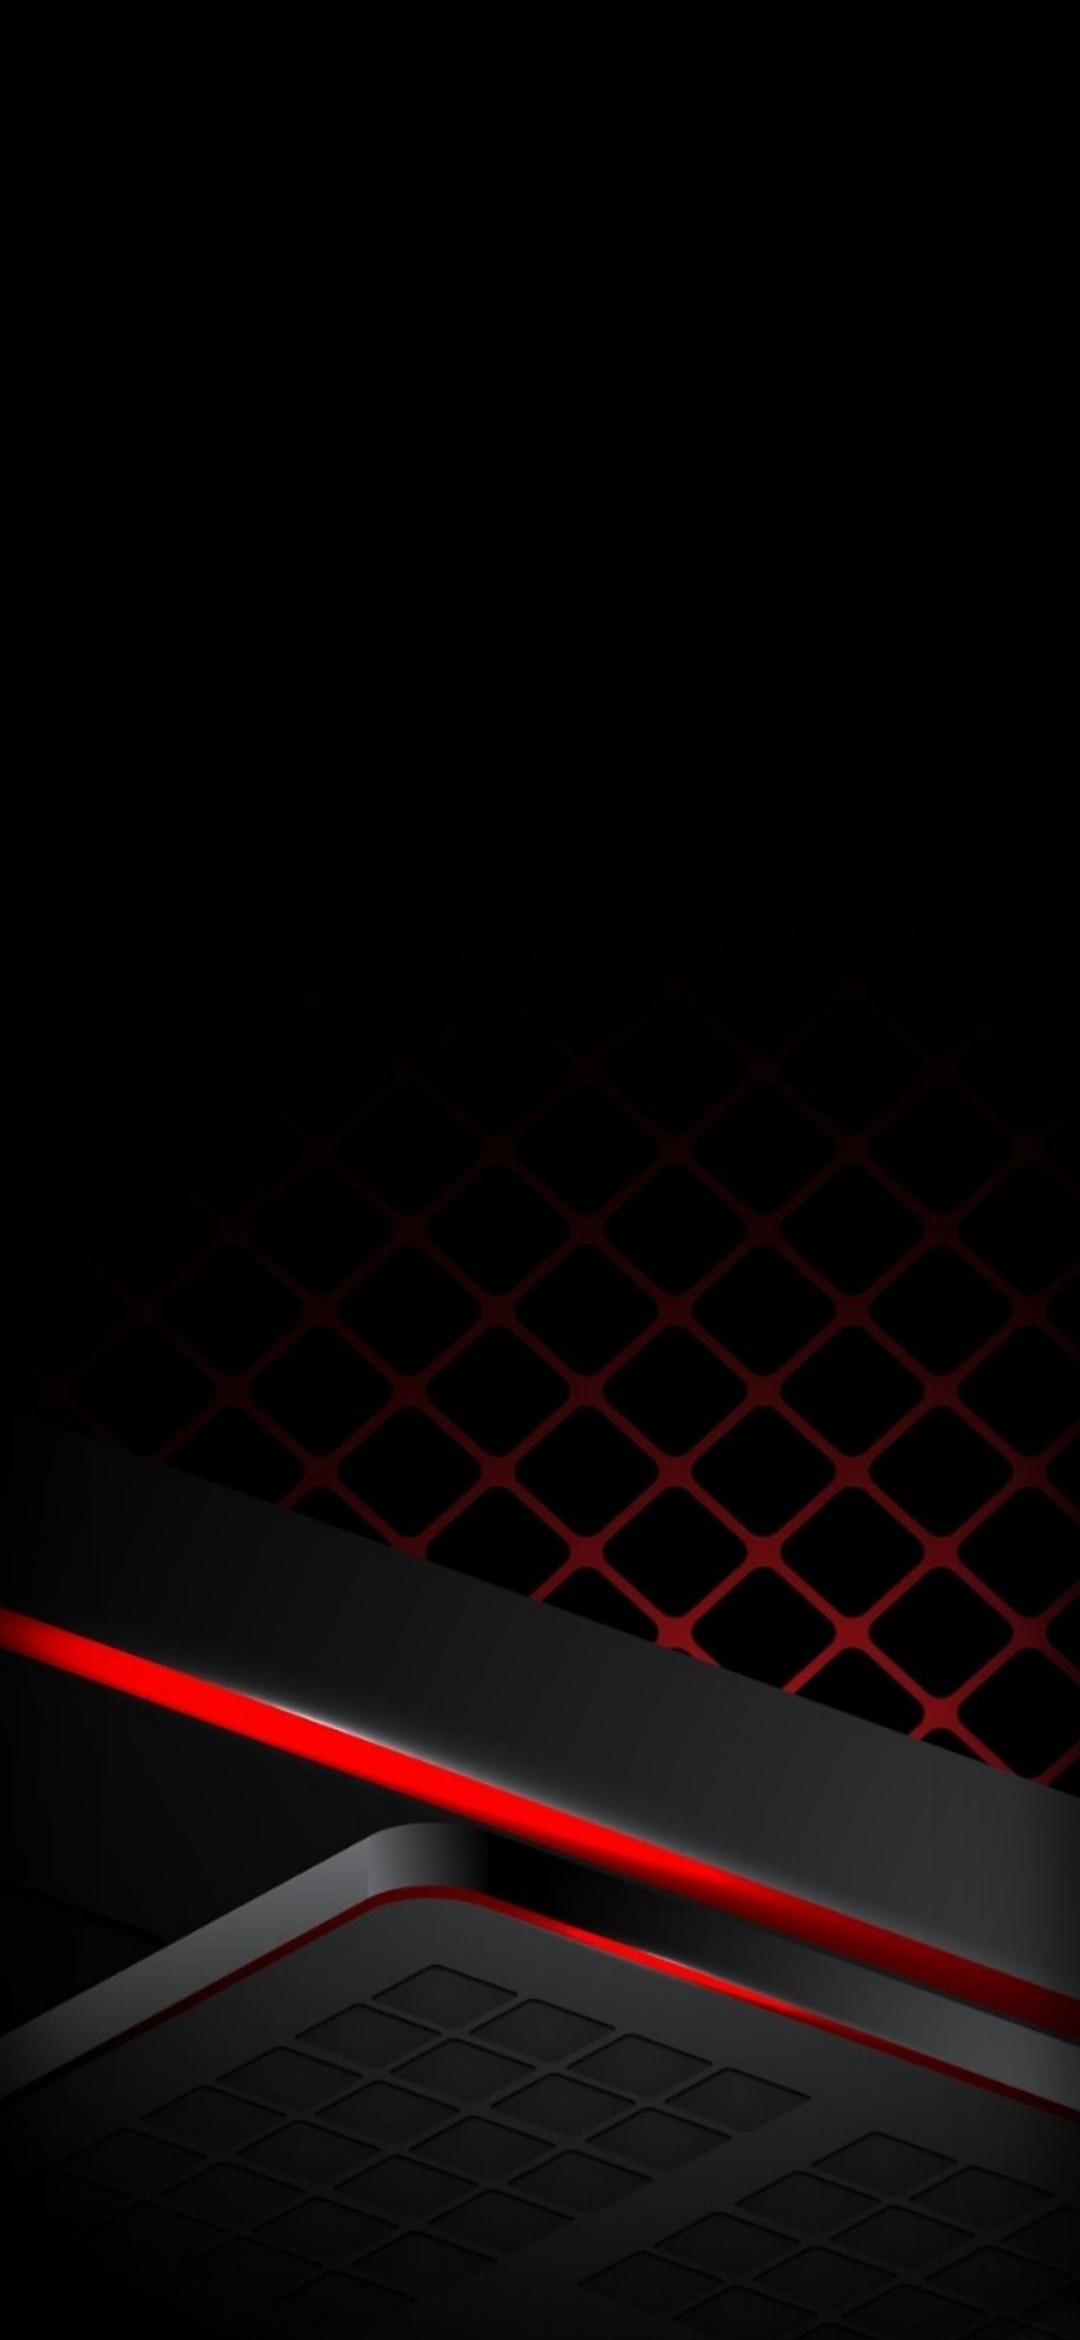 黒と赤のかっこいいテクスチャー Redmagic 5 Android スマホ壁紙 待ち受け スマラン